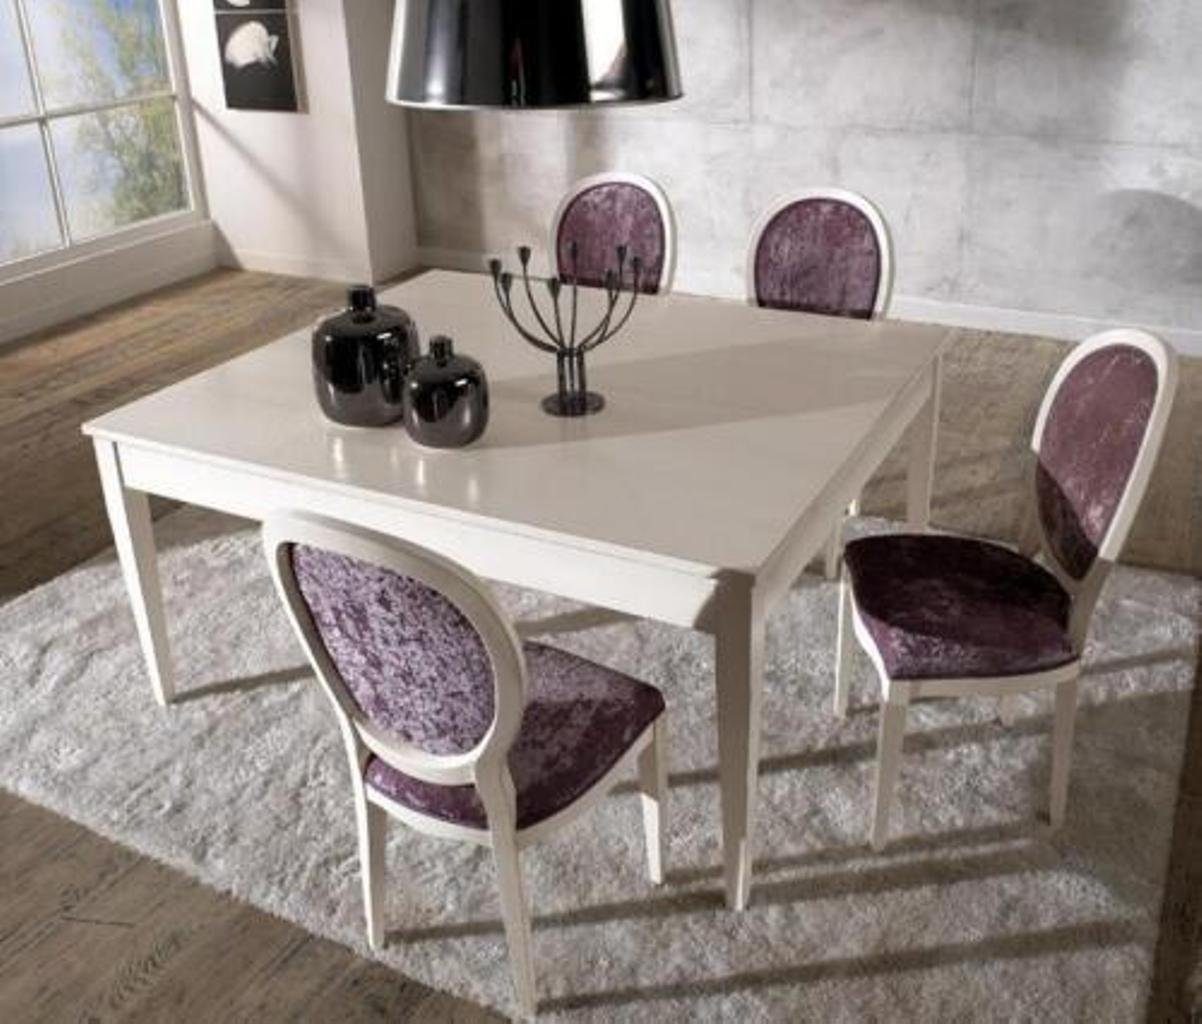 JVmoebel Esstisch, Italienische Esstische Tisch Holz Tische Möbel Esstisch Modern Stil